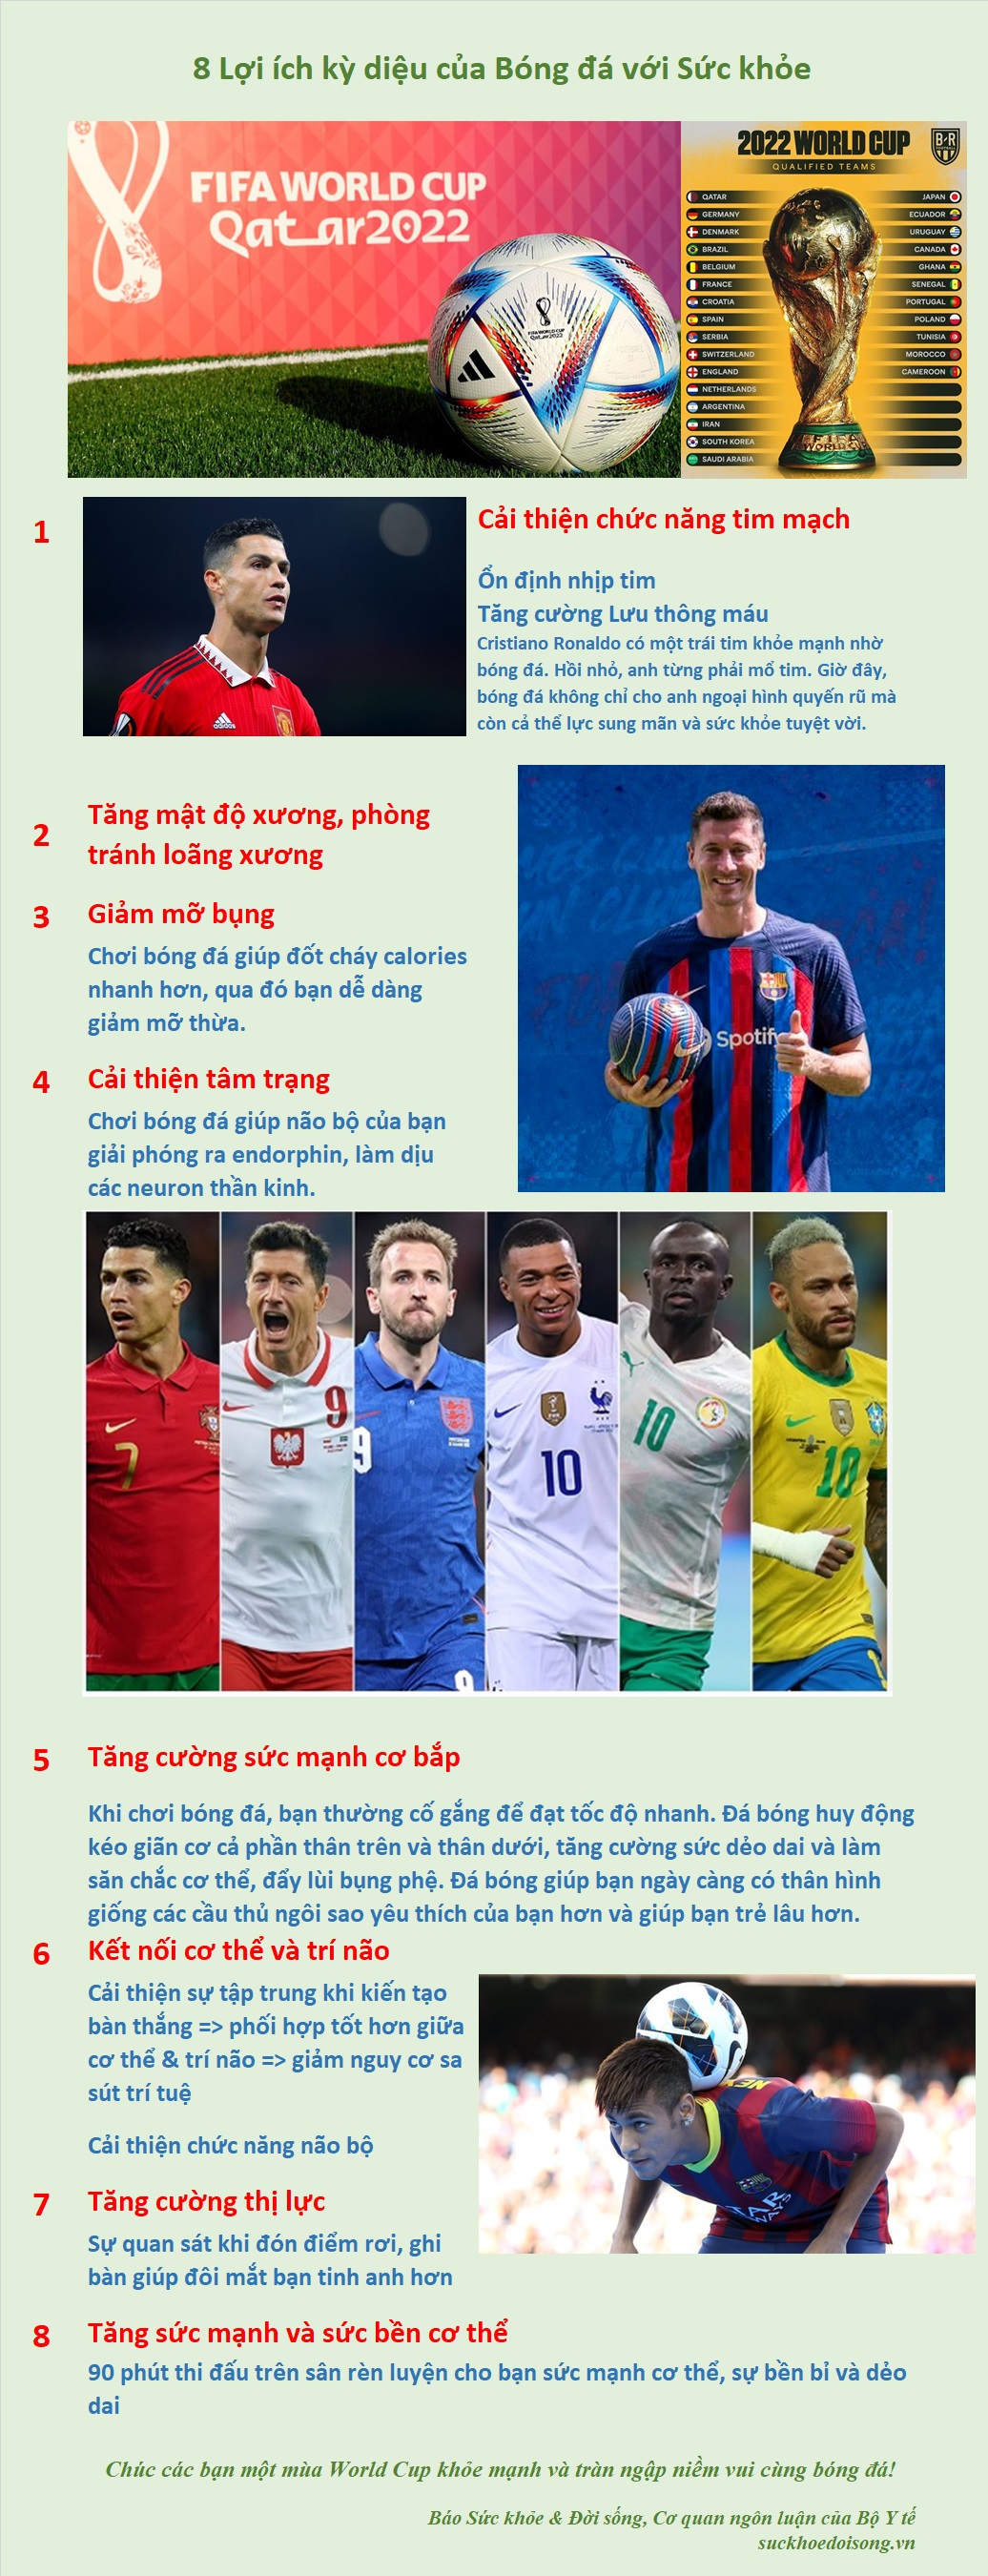 [Infographic] - 8 Lợi ích kỳ diệu của bóng đá với sức khỏe - 1